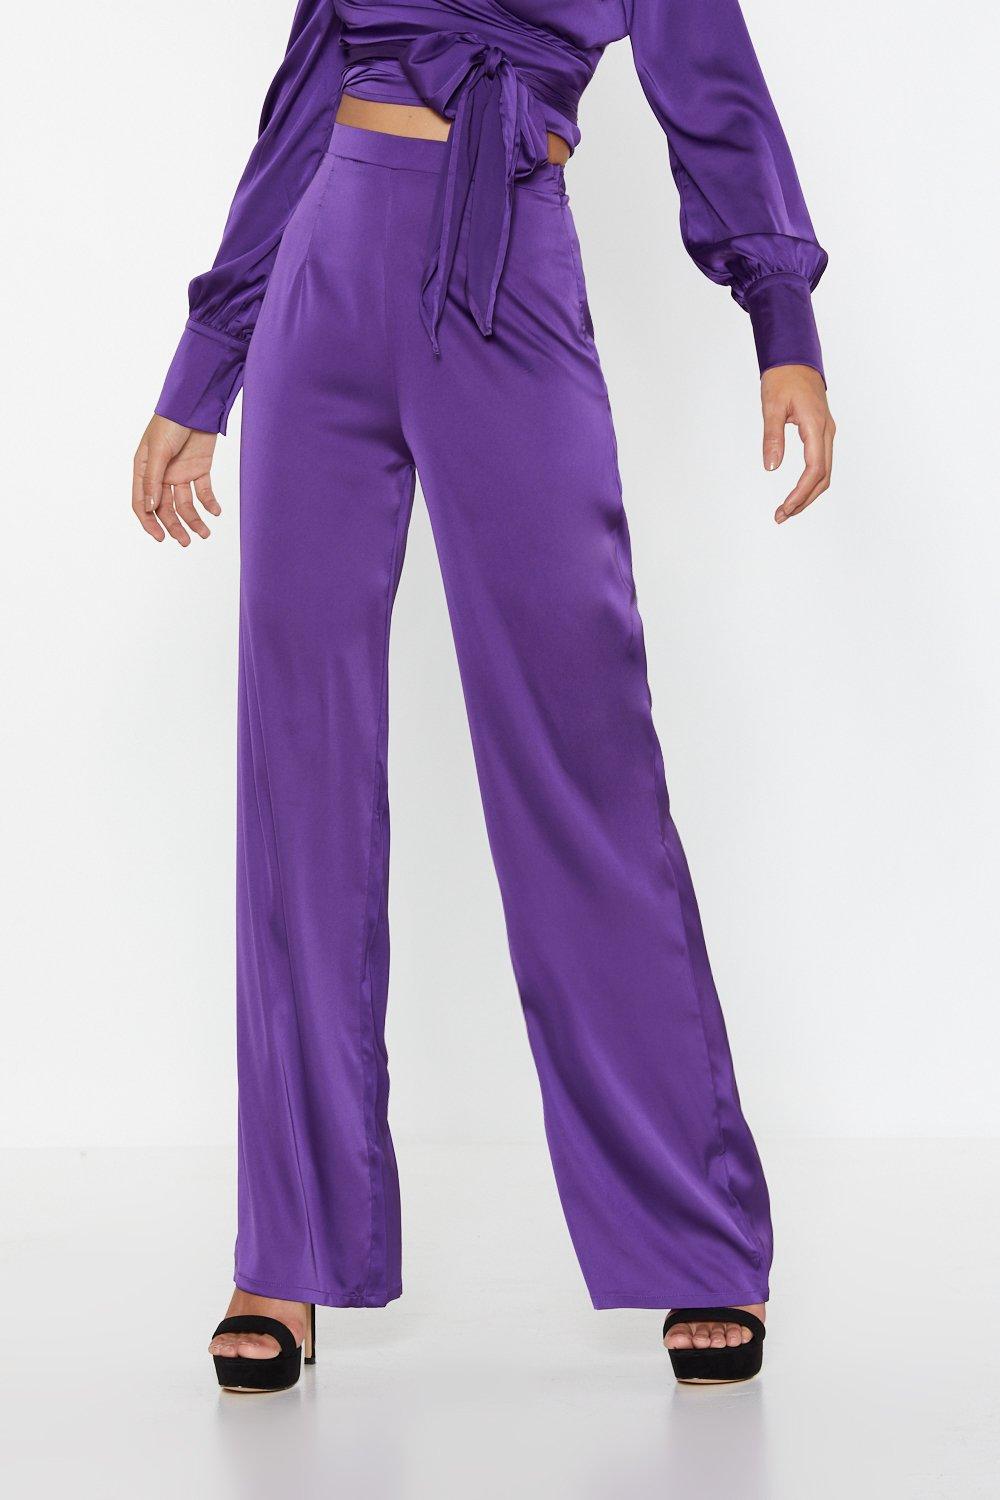 high waisted purple pants